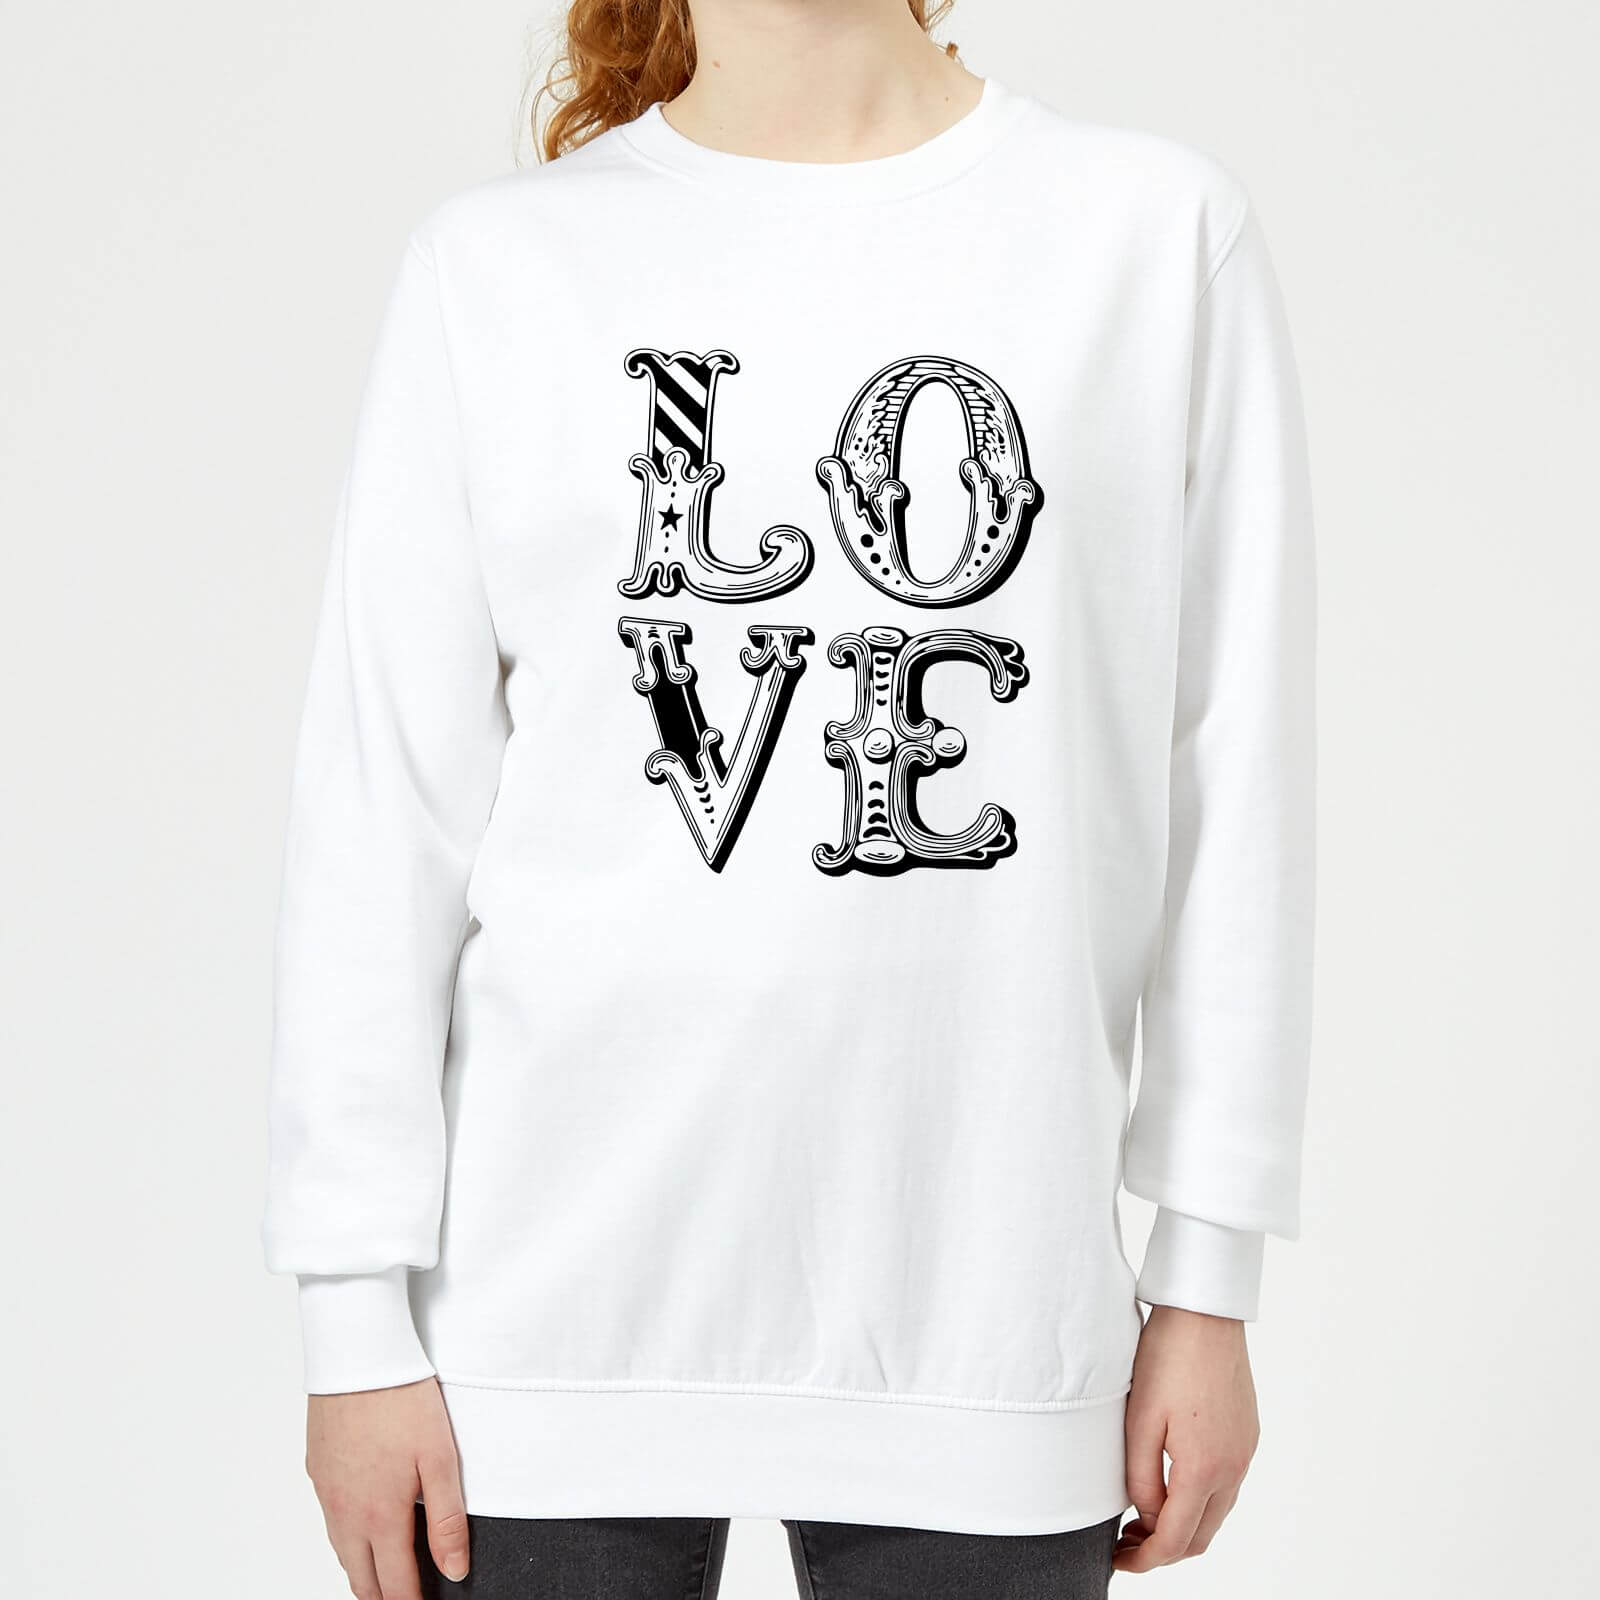 The Motivated Type Love Women's Sweatshirt - White - XS - White